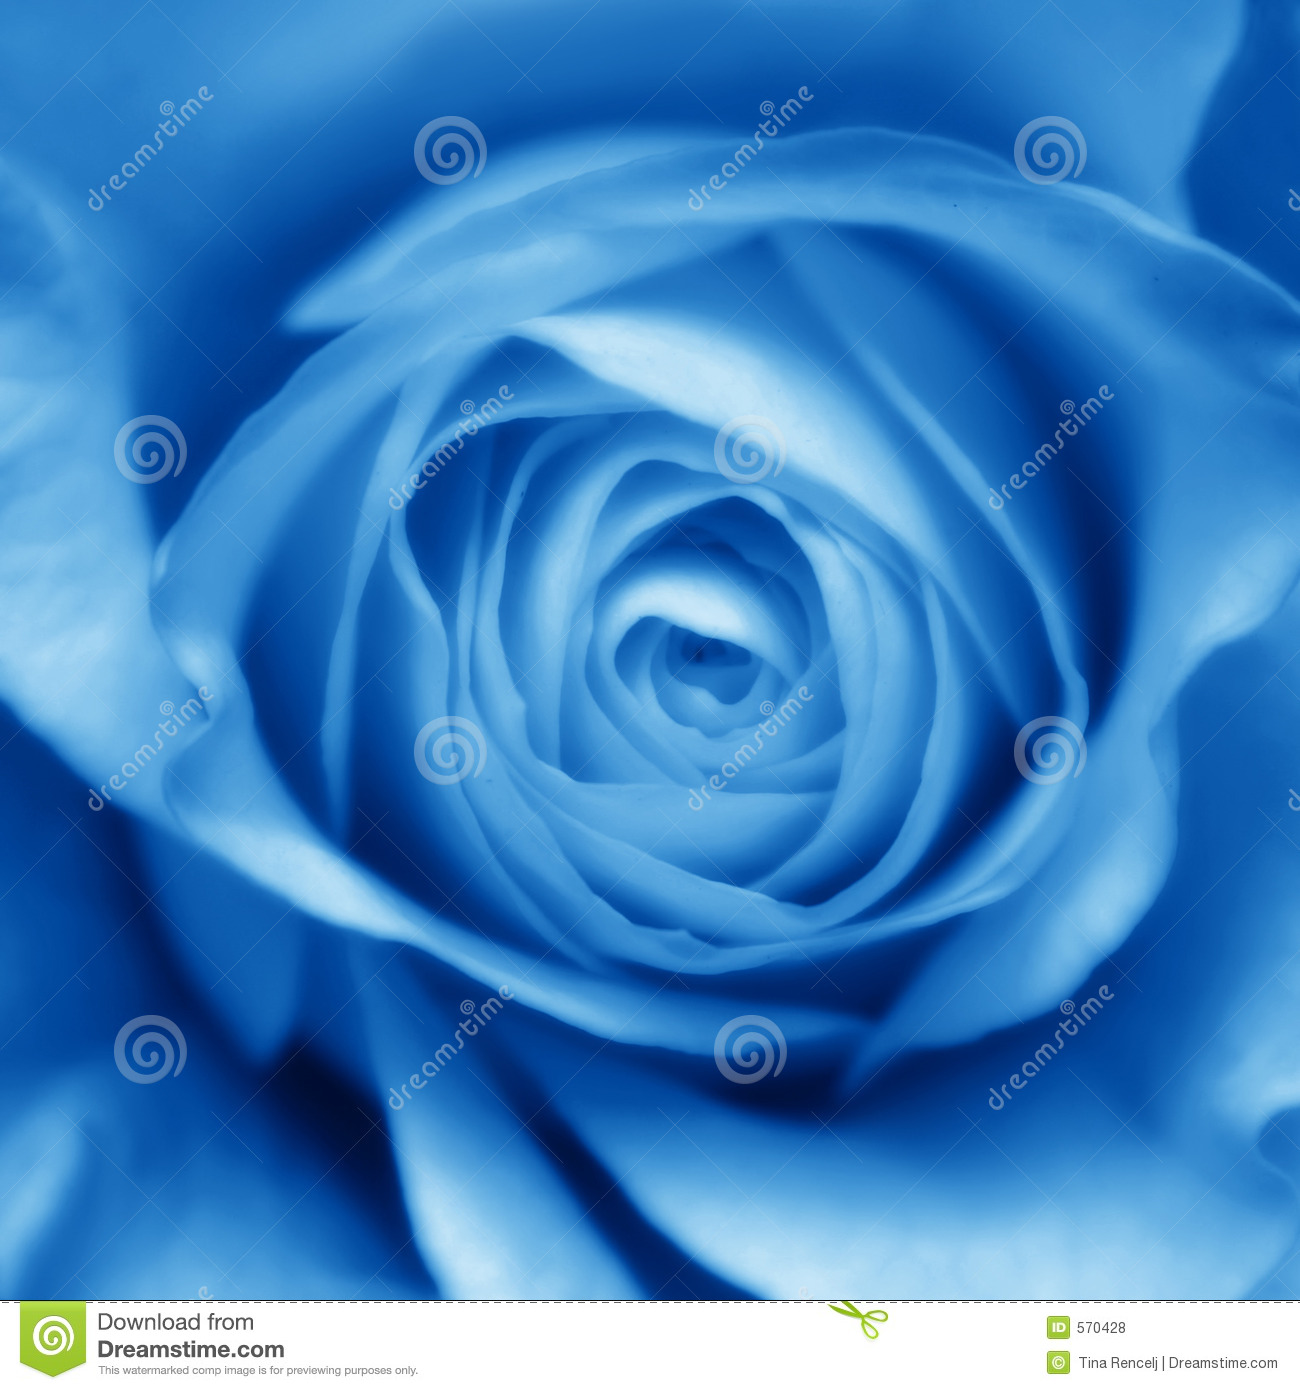 Bot O Azul De Rosa Fotos De Stock Royalty Free   Imagem  570428